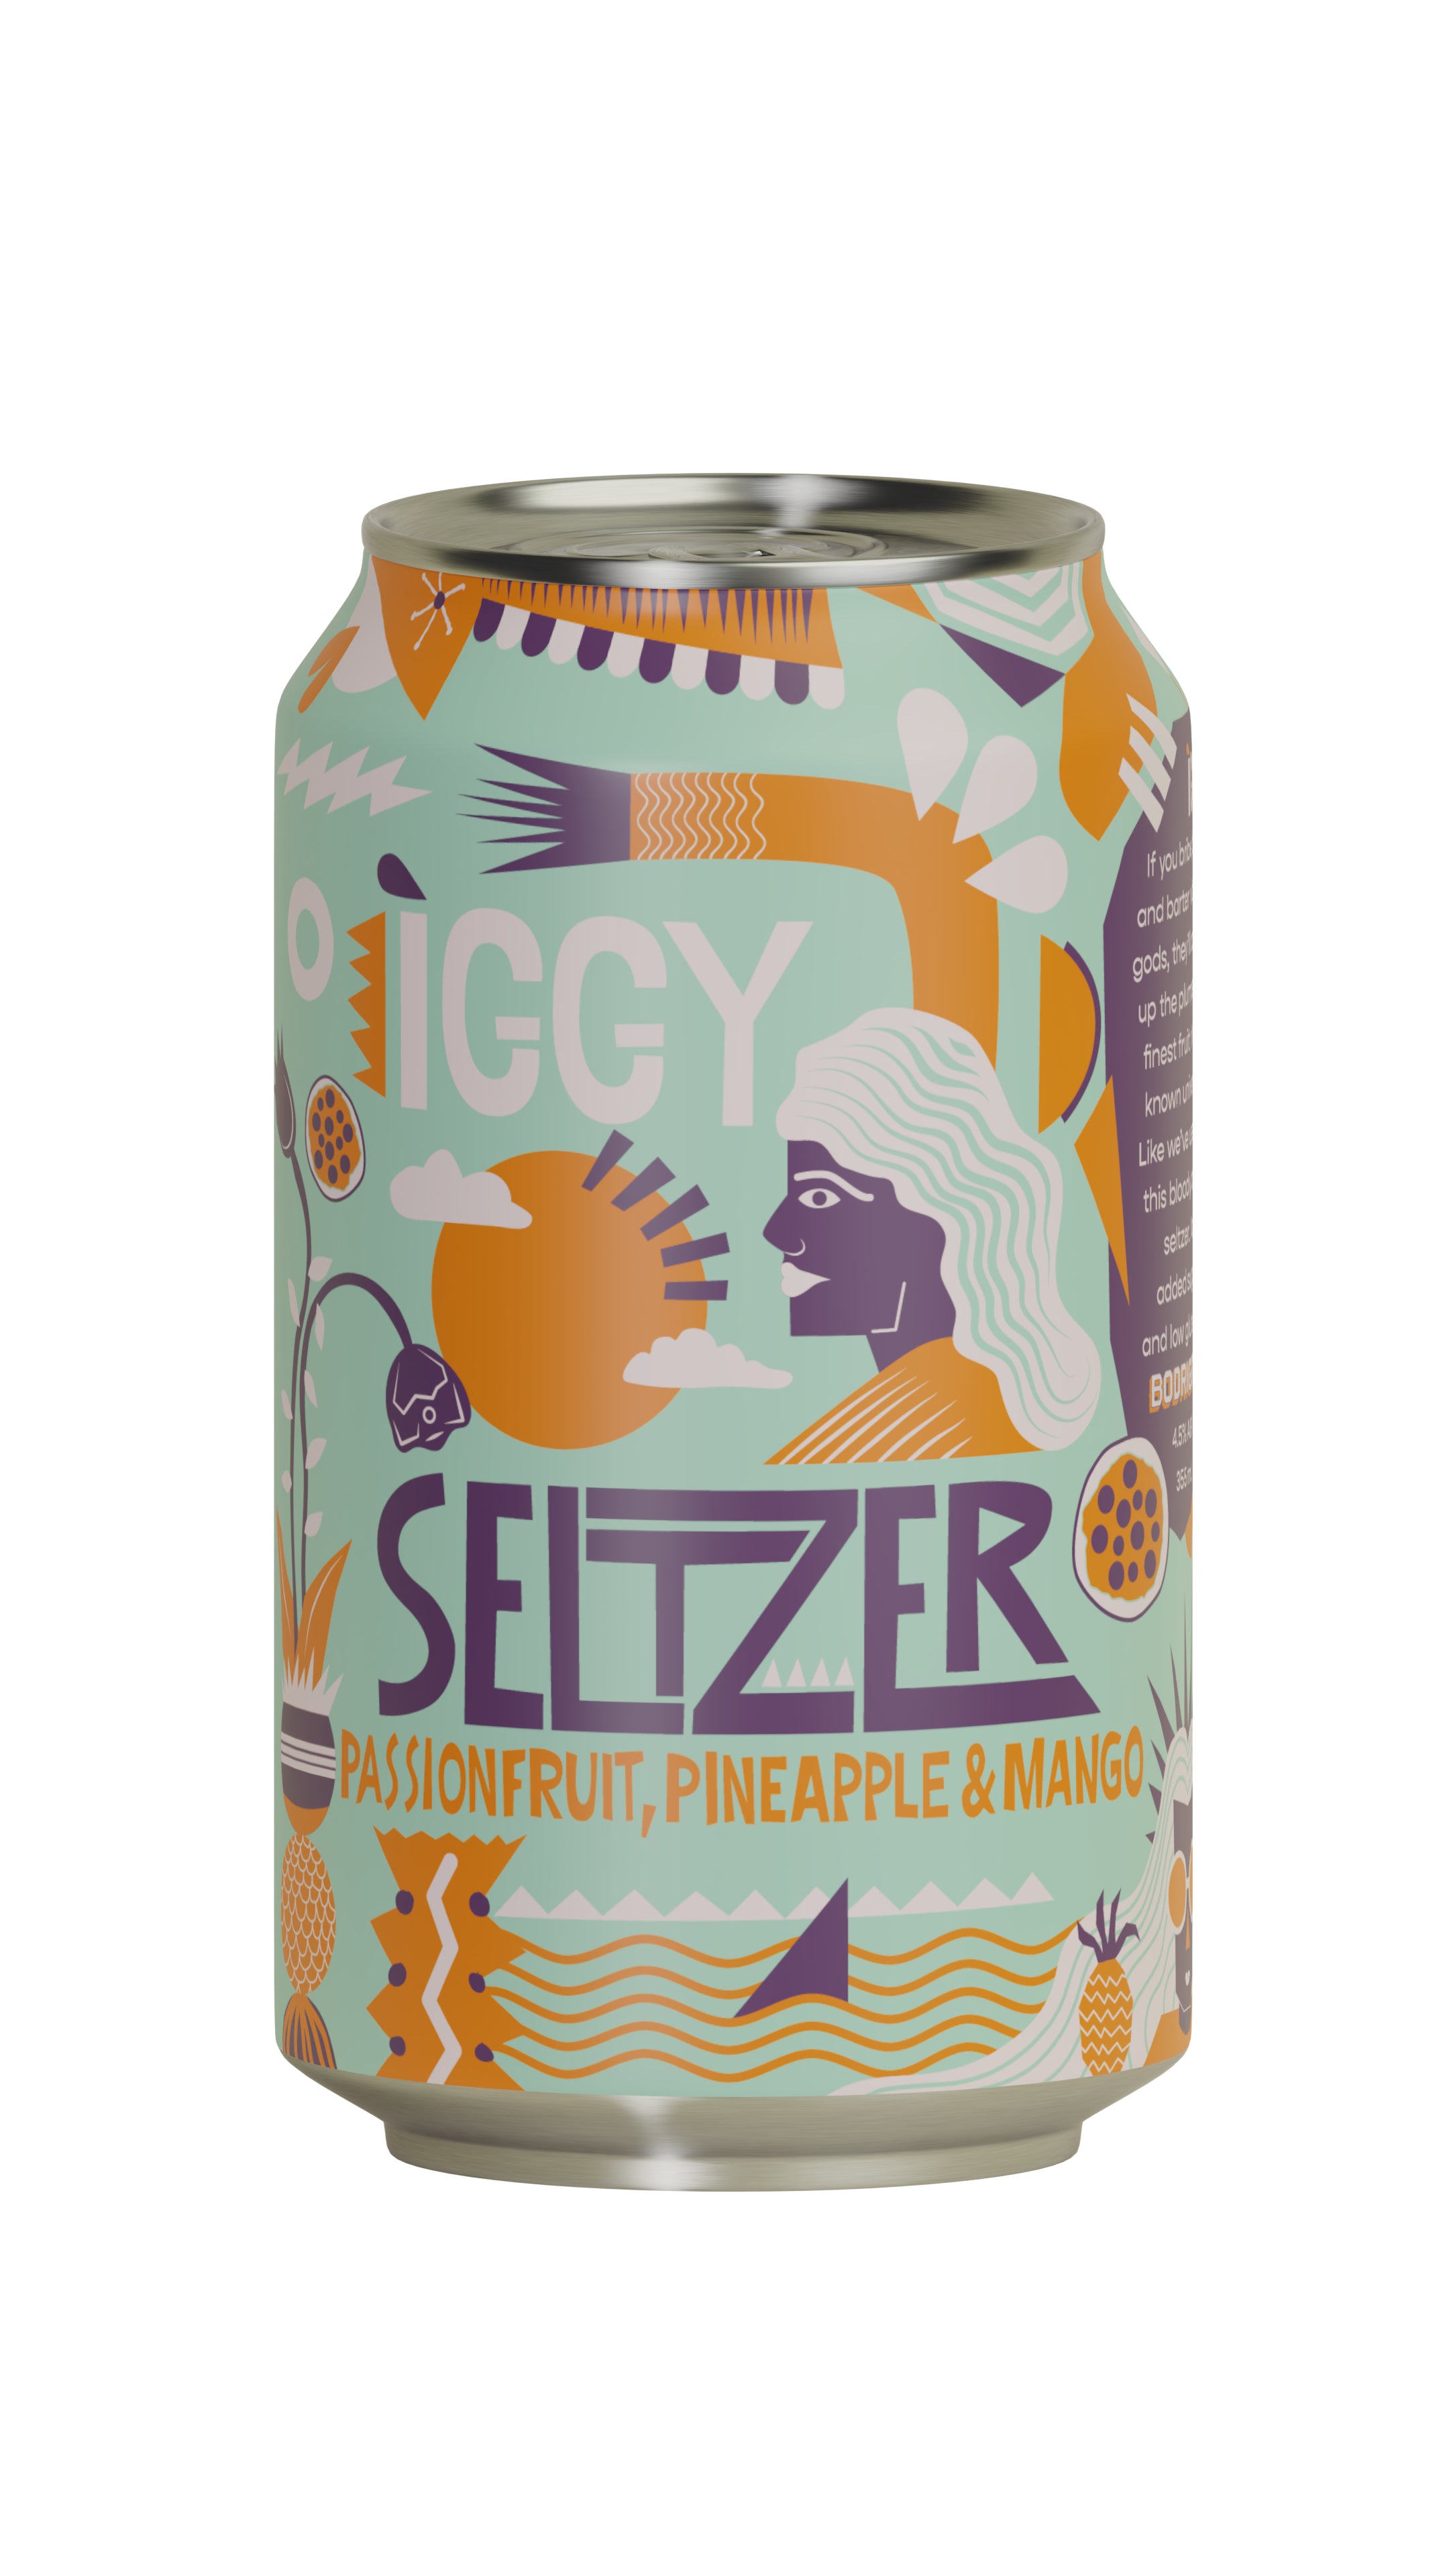 Iggy Seltzer - Passionfruit, Pineapple & Mango